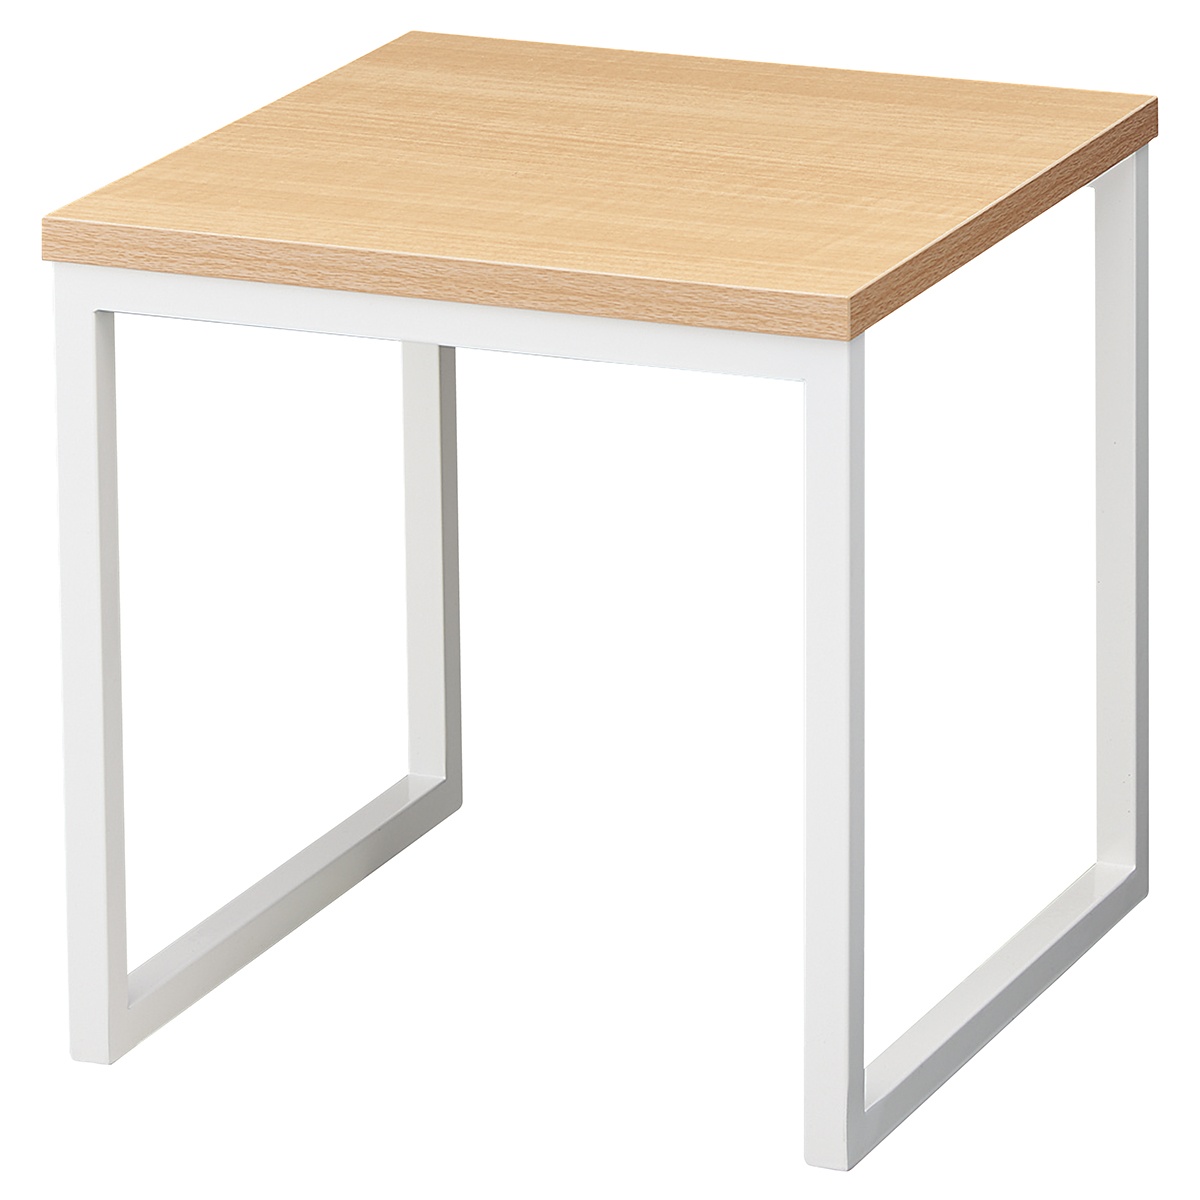 処分特価 木製コの字型テーブル 小 エクリュ色 Aタイプ 【店舗什器 ディスプレイ用テーブル テーブル（木製天板） 木製スリムコの字テーブ その他 